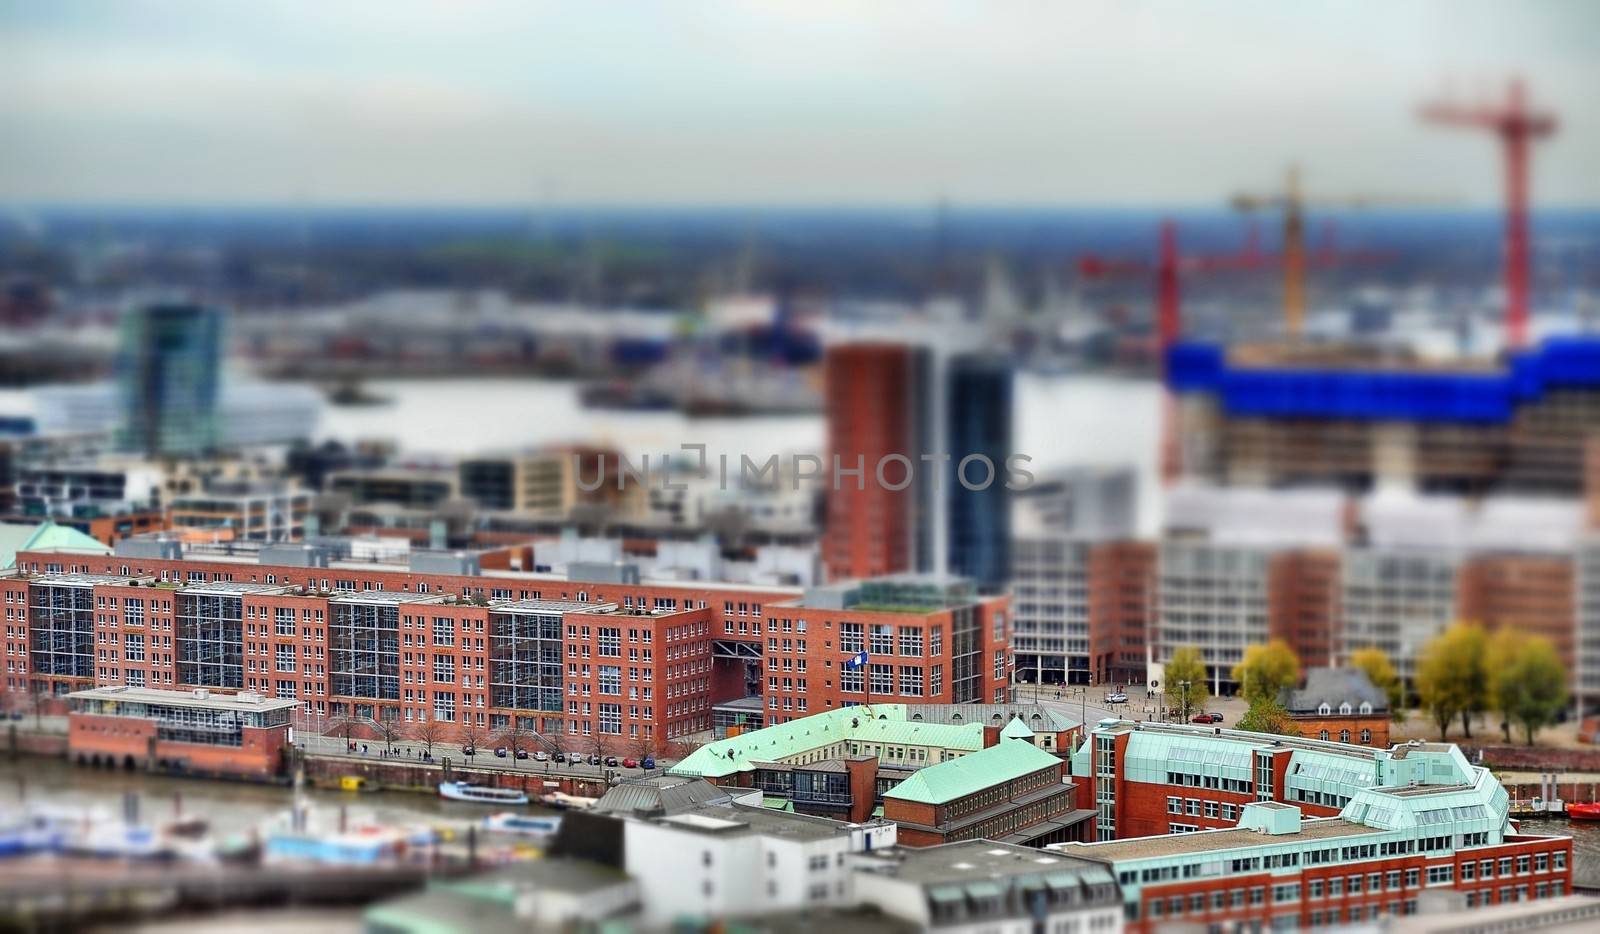 Hamburg Speicherstadt in miniature.